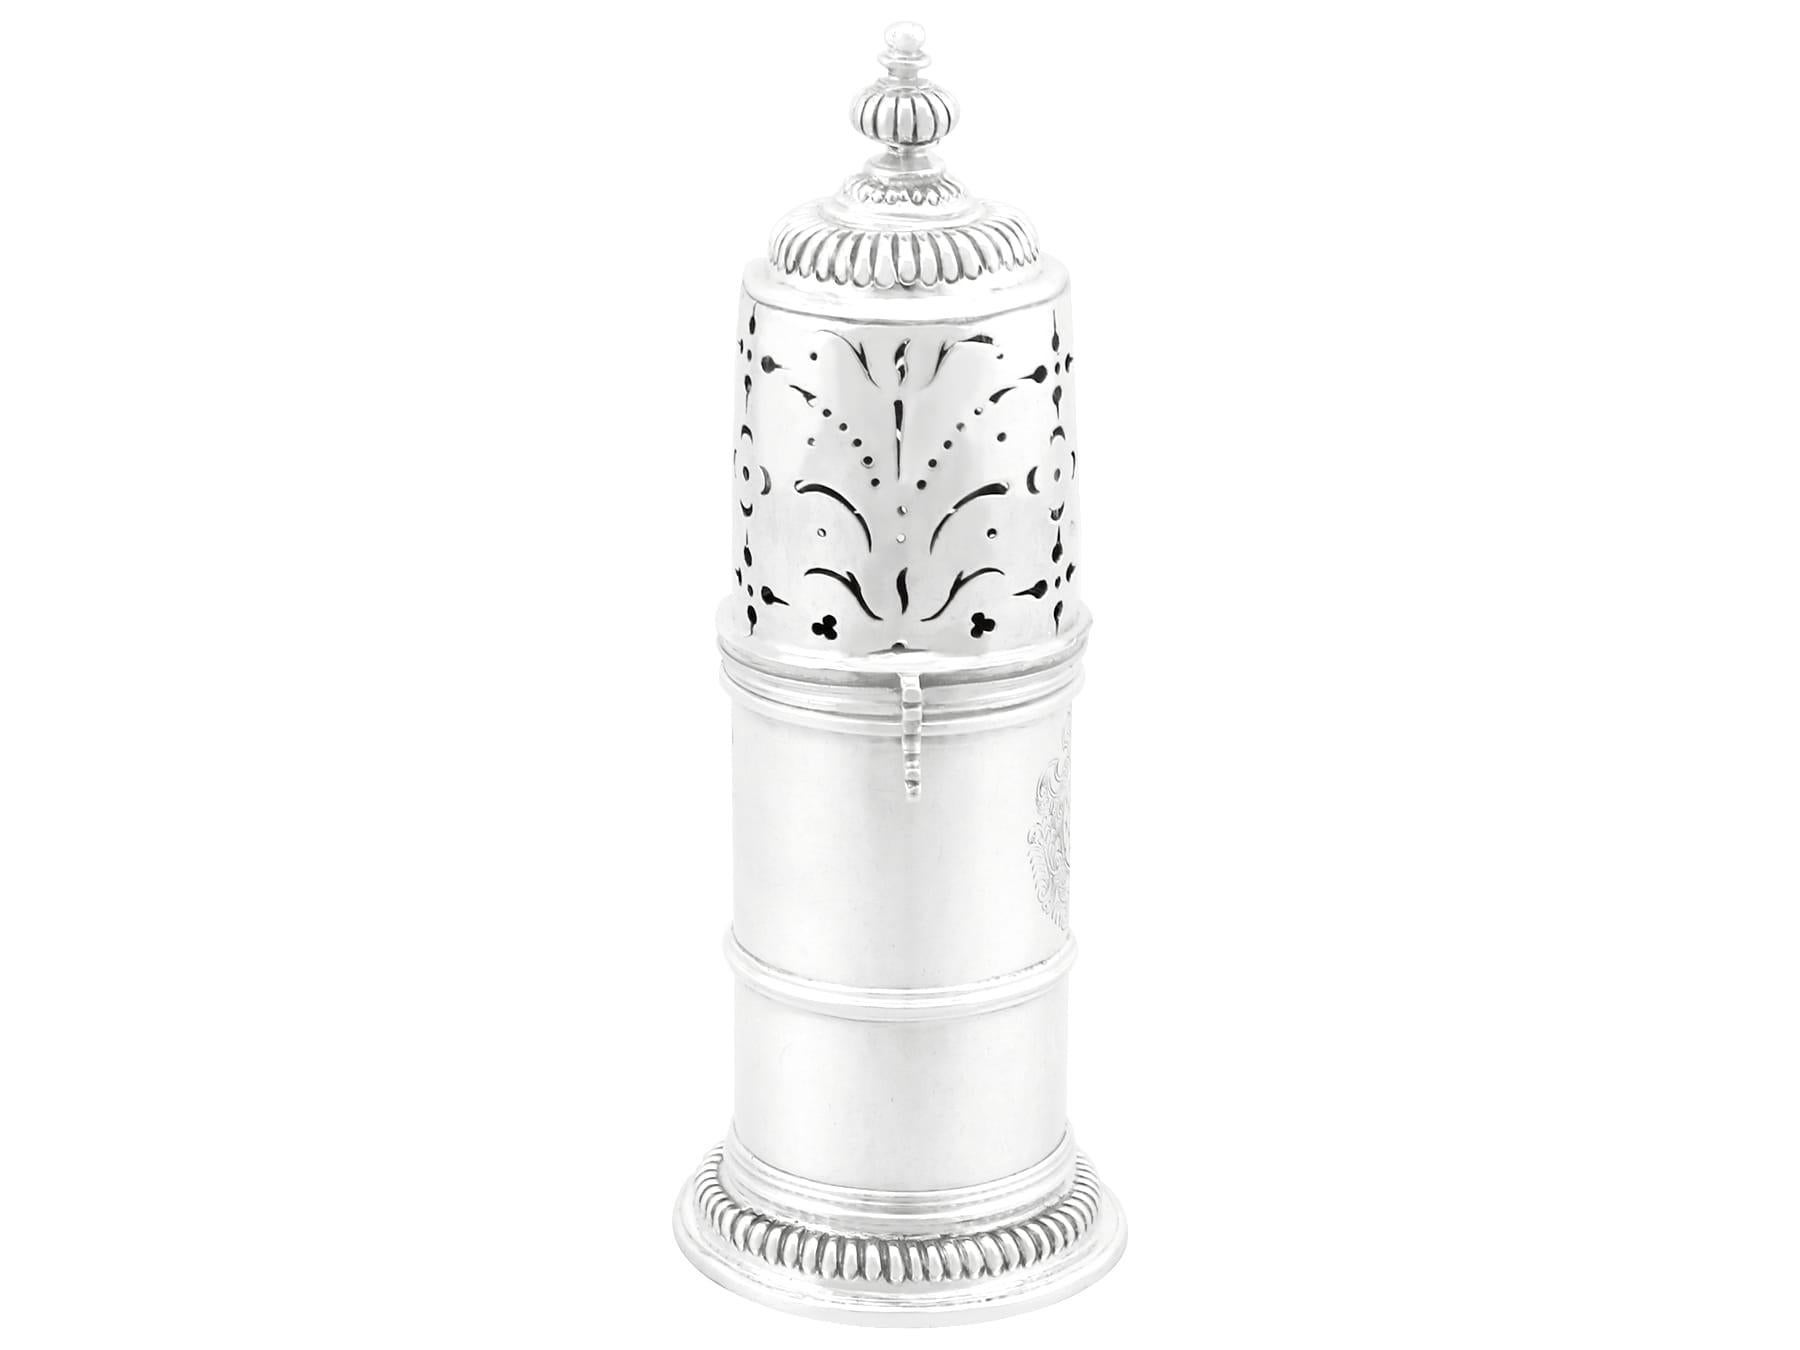 Ein außergewöhnlicher, feiner und beeindruckender antiker William III. englischer Britannia-Standard-Silberstreuer im Leuchtturm-Stil; eine Ergänzung zu unserer Silber-Teegeschirr-Sammlung.

Dieser außergewöhnliche antike William III. englische